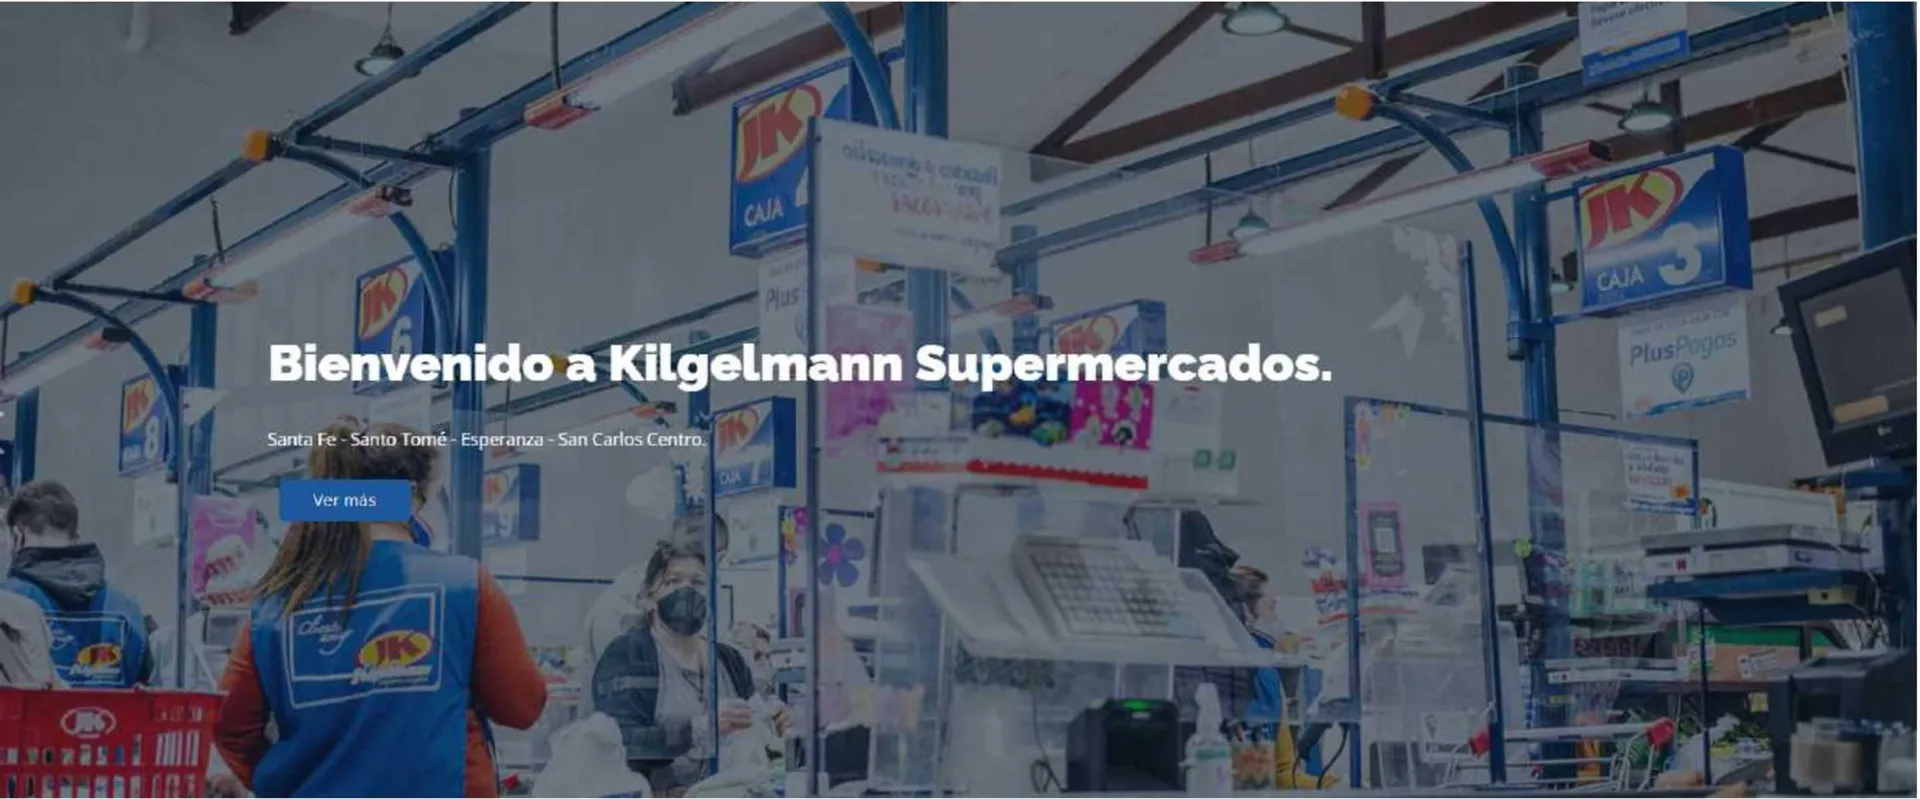 Catálogo Kilbel Supermercados - 1